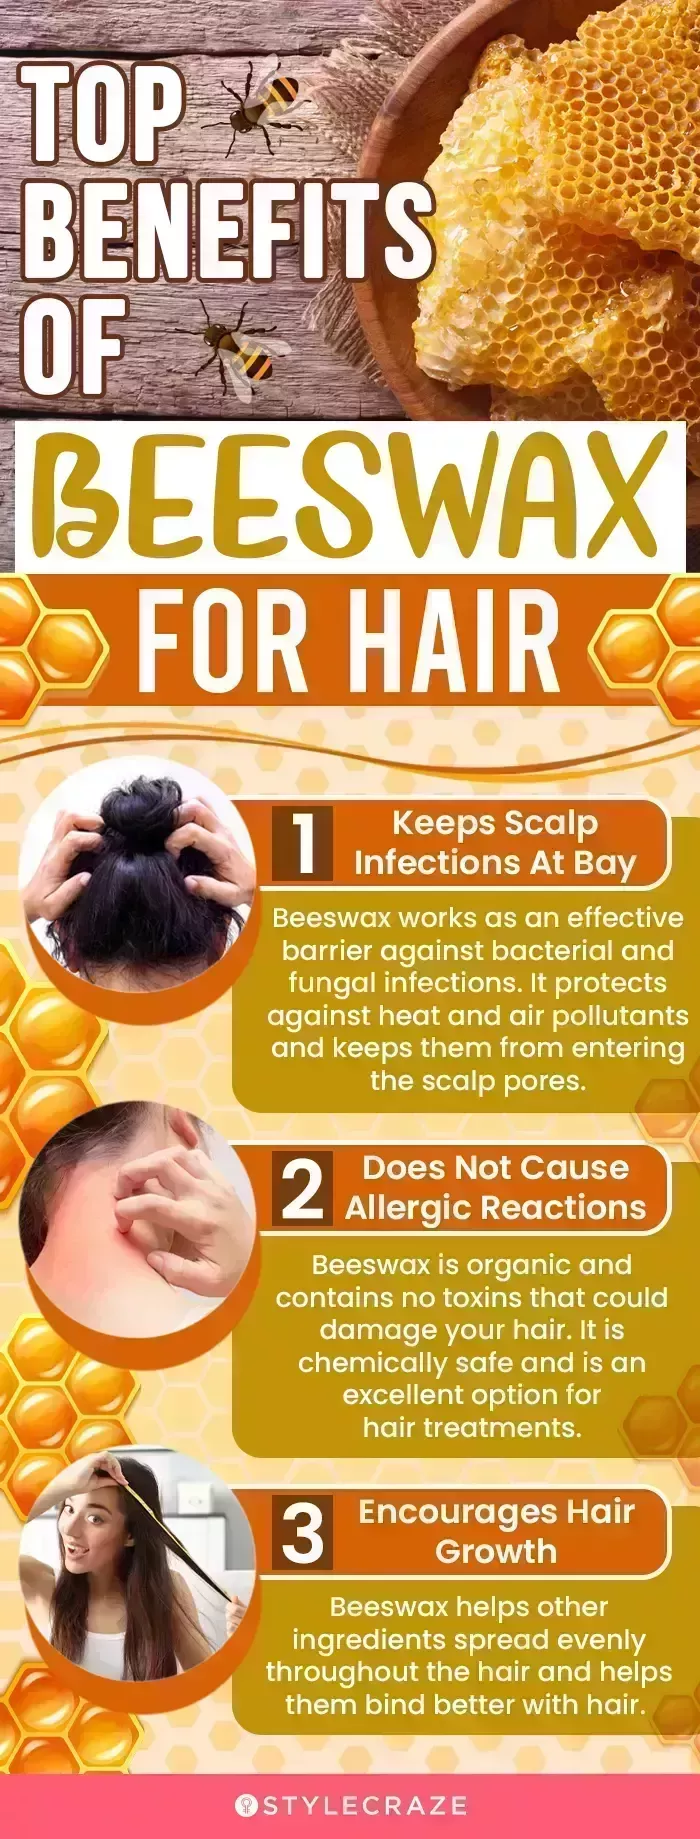 5 beneficios de la cera de abejas para el cabello, cómo usarla y efectos secundarios